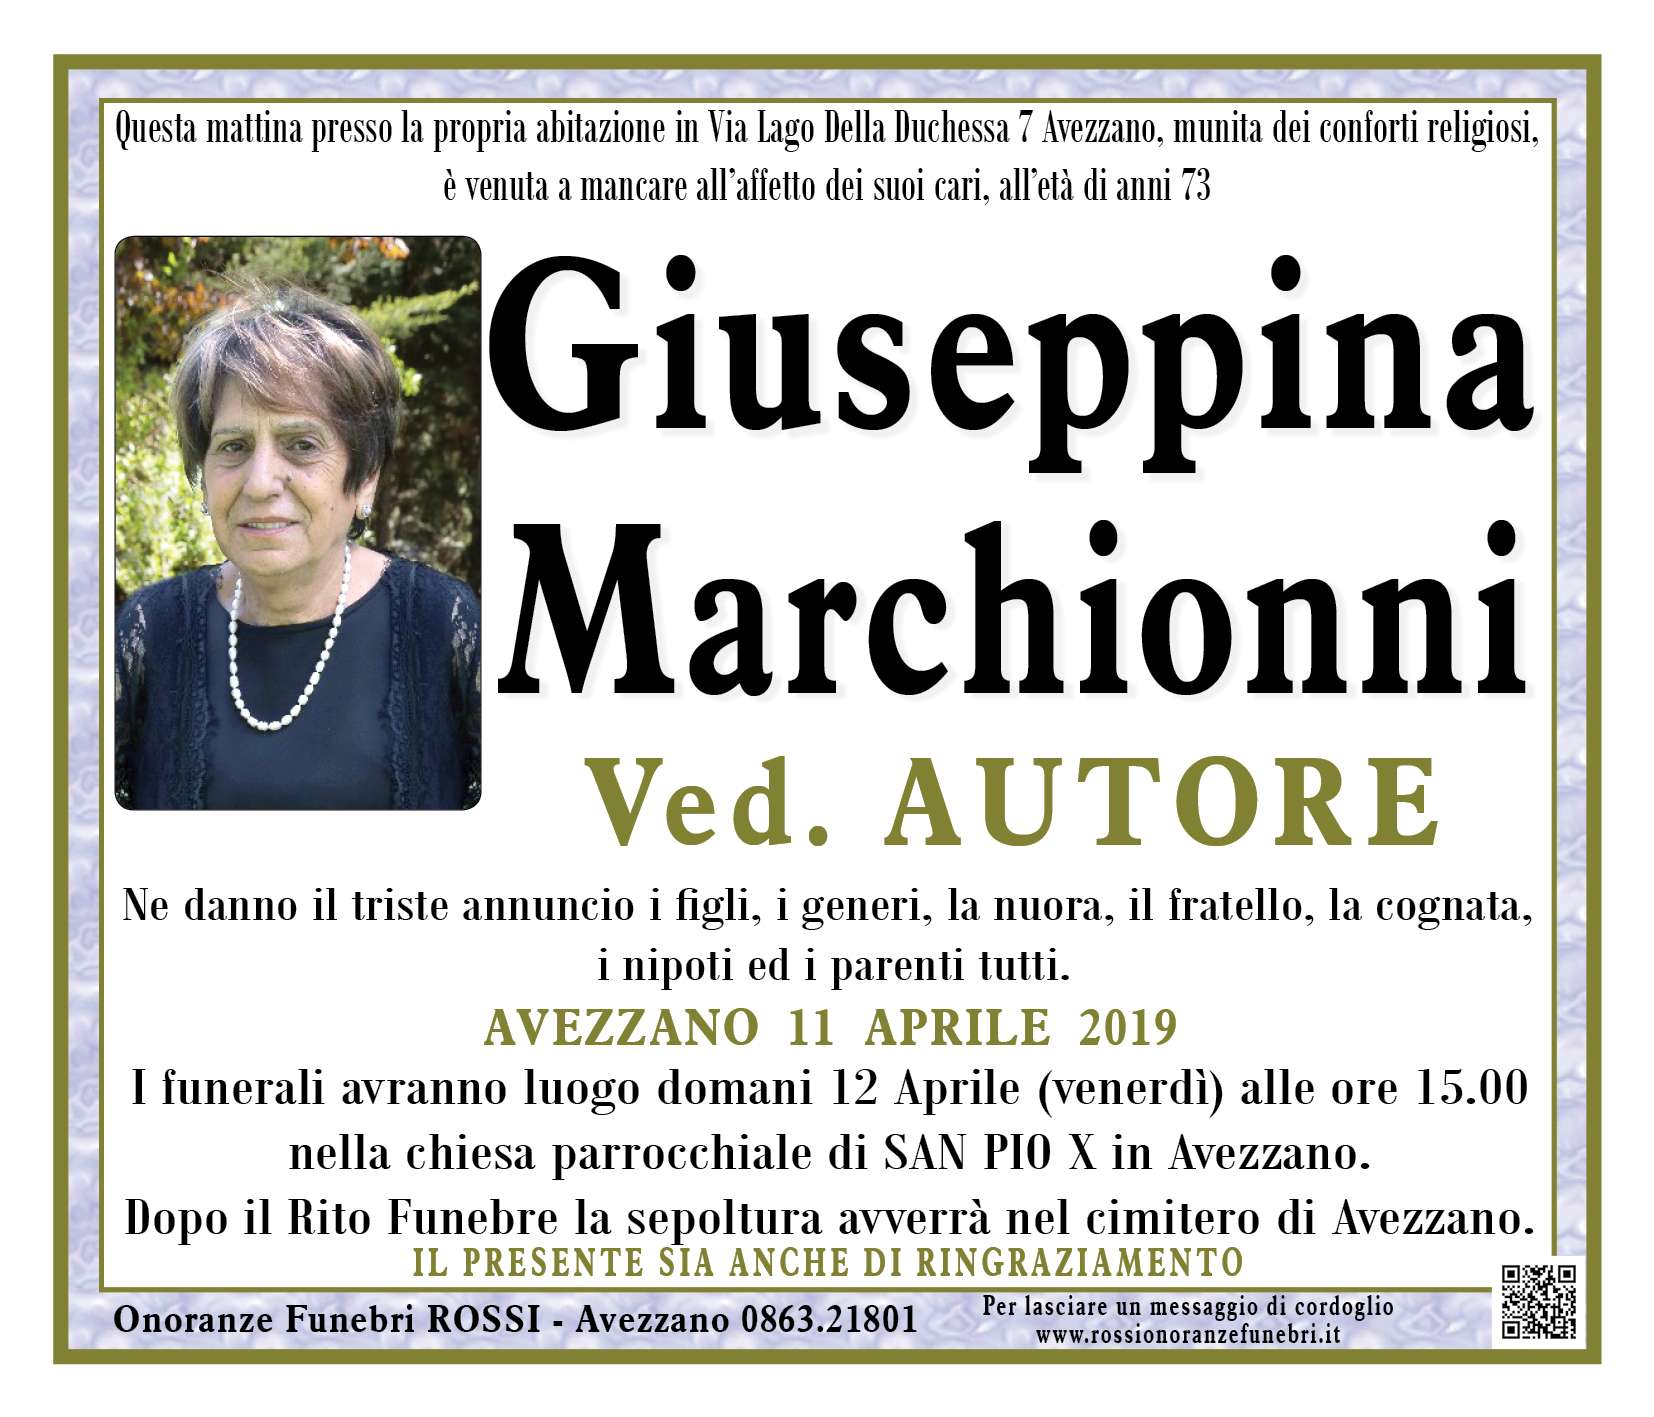 Giuseppina Marchionni